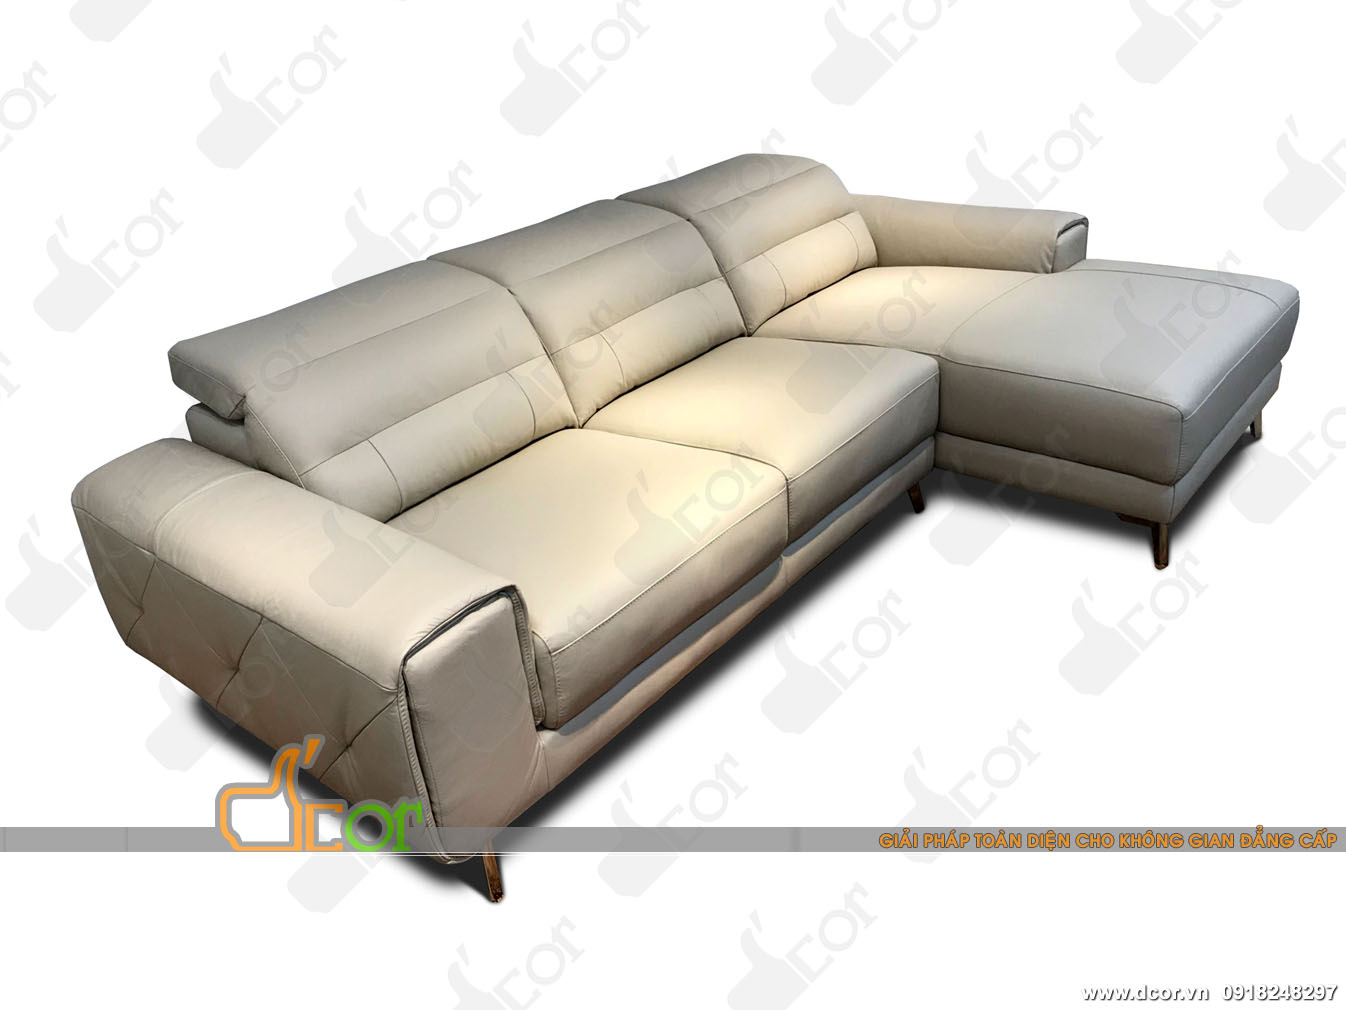 Không thể rời mắt với mẫu ghế sofa đẹp lịch lãm nhập khẩu chính hãng Malaysia